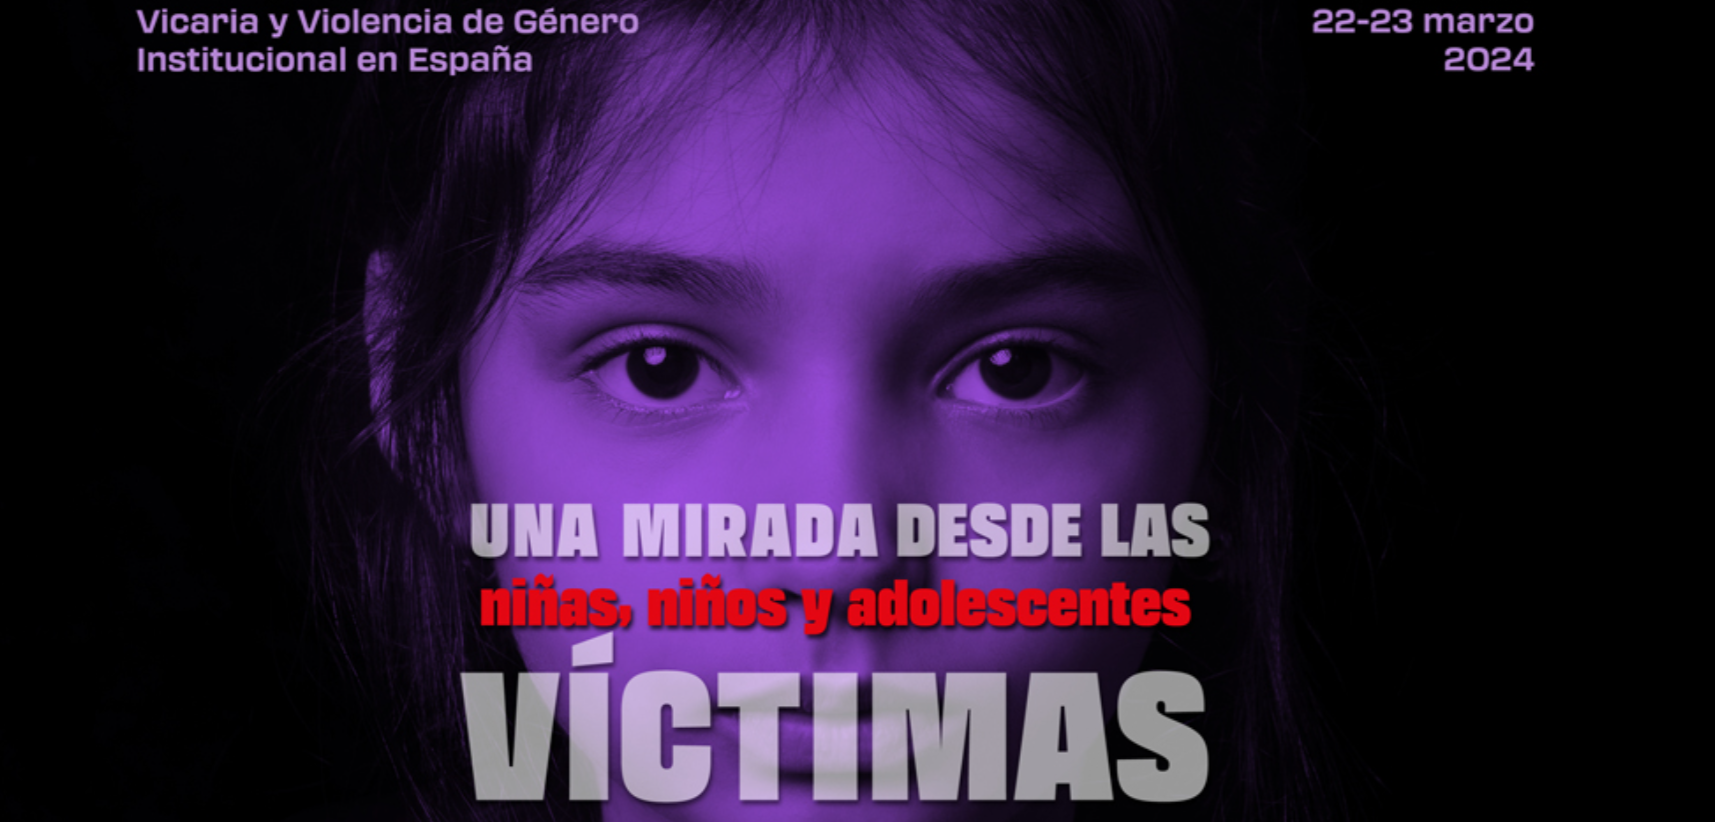 El Colegio ofrece 6 becas para el III Encuentro Estatal Violencia Vicaria y Violencia de Género Institucional en España (Bcn)